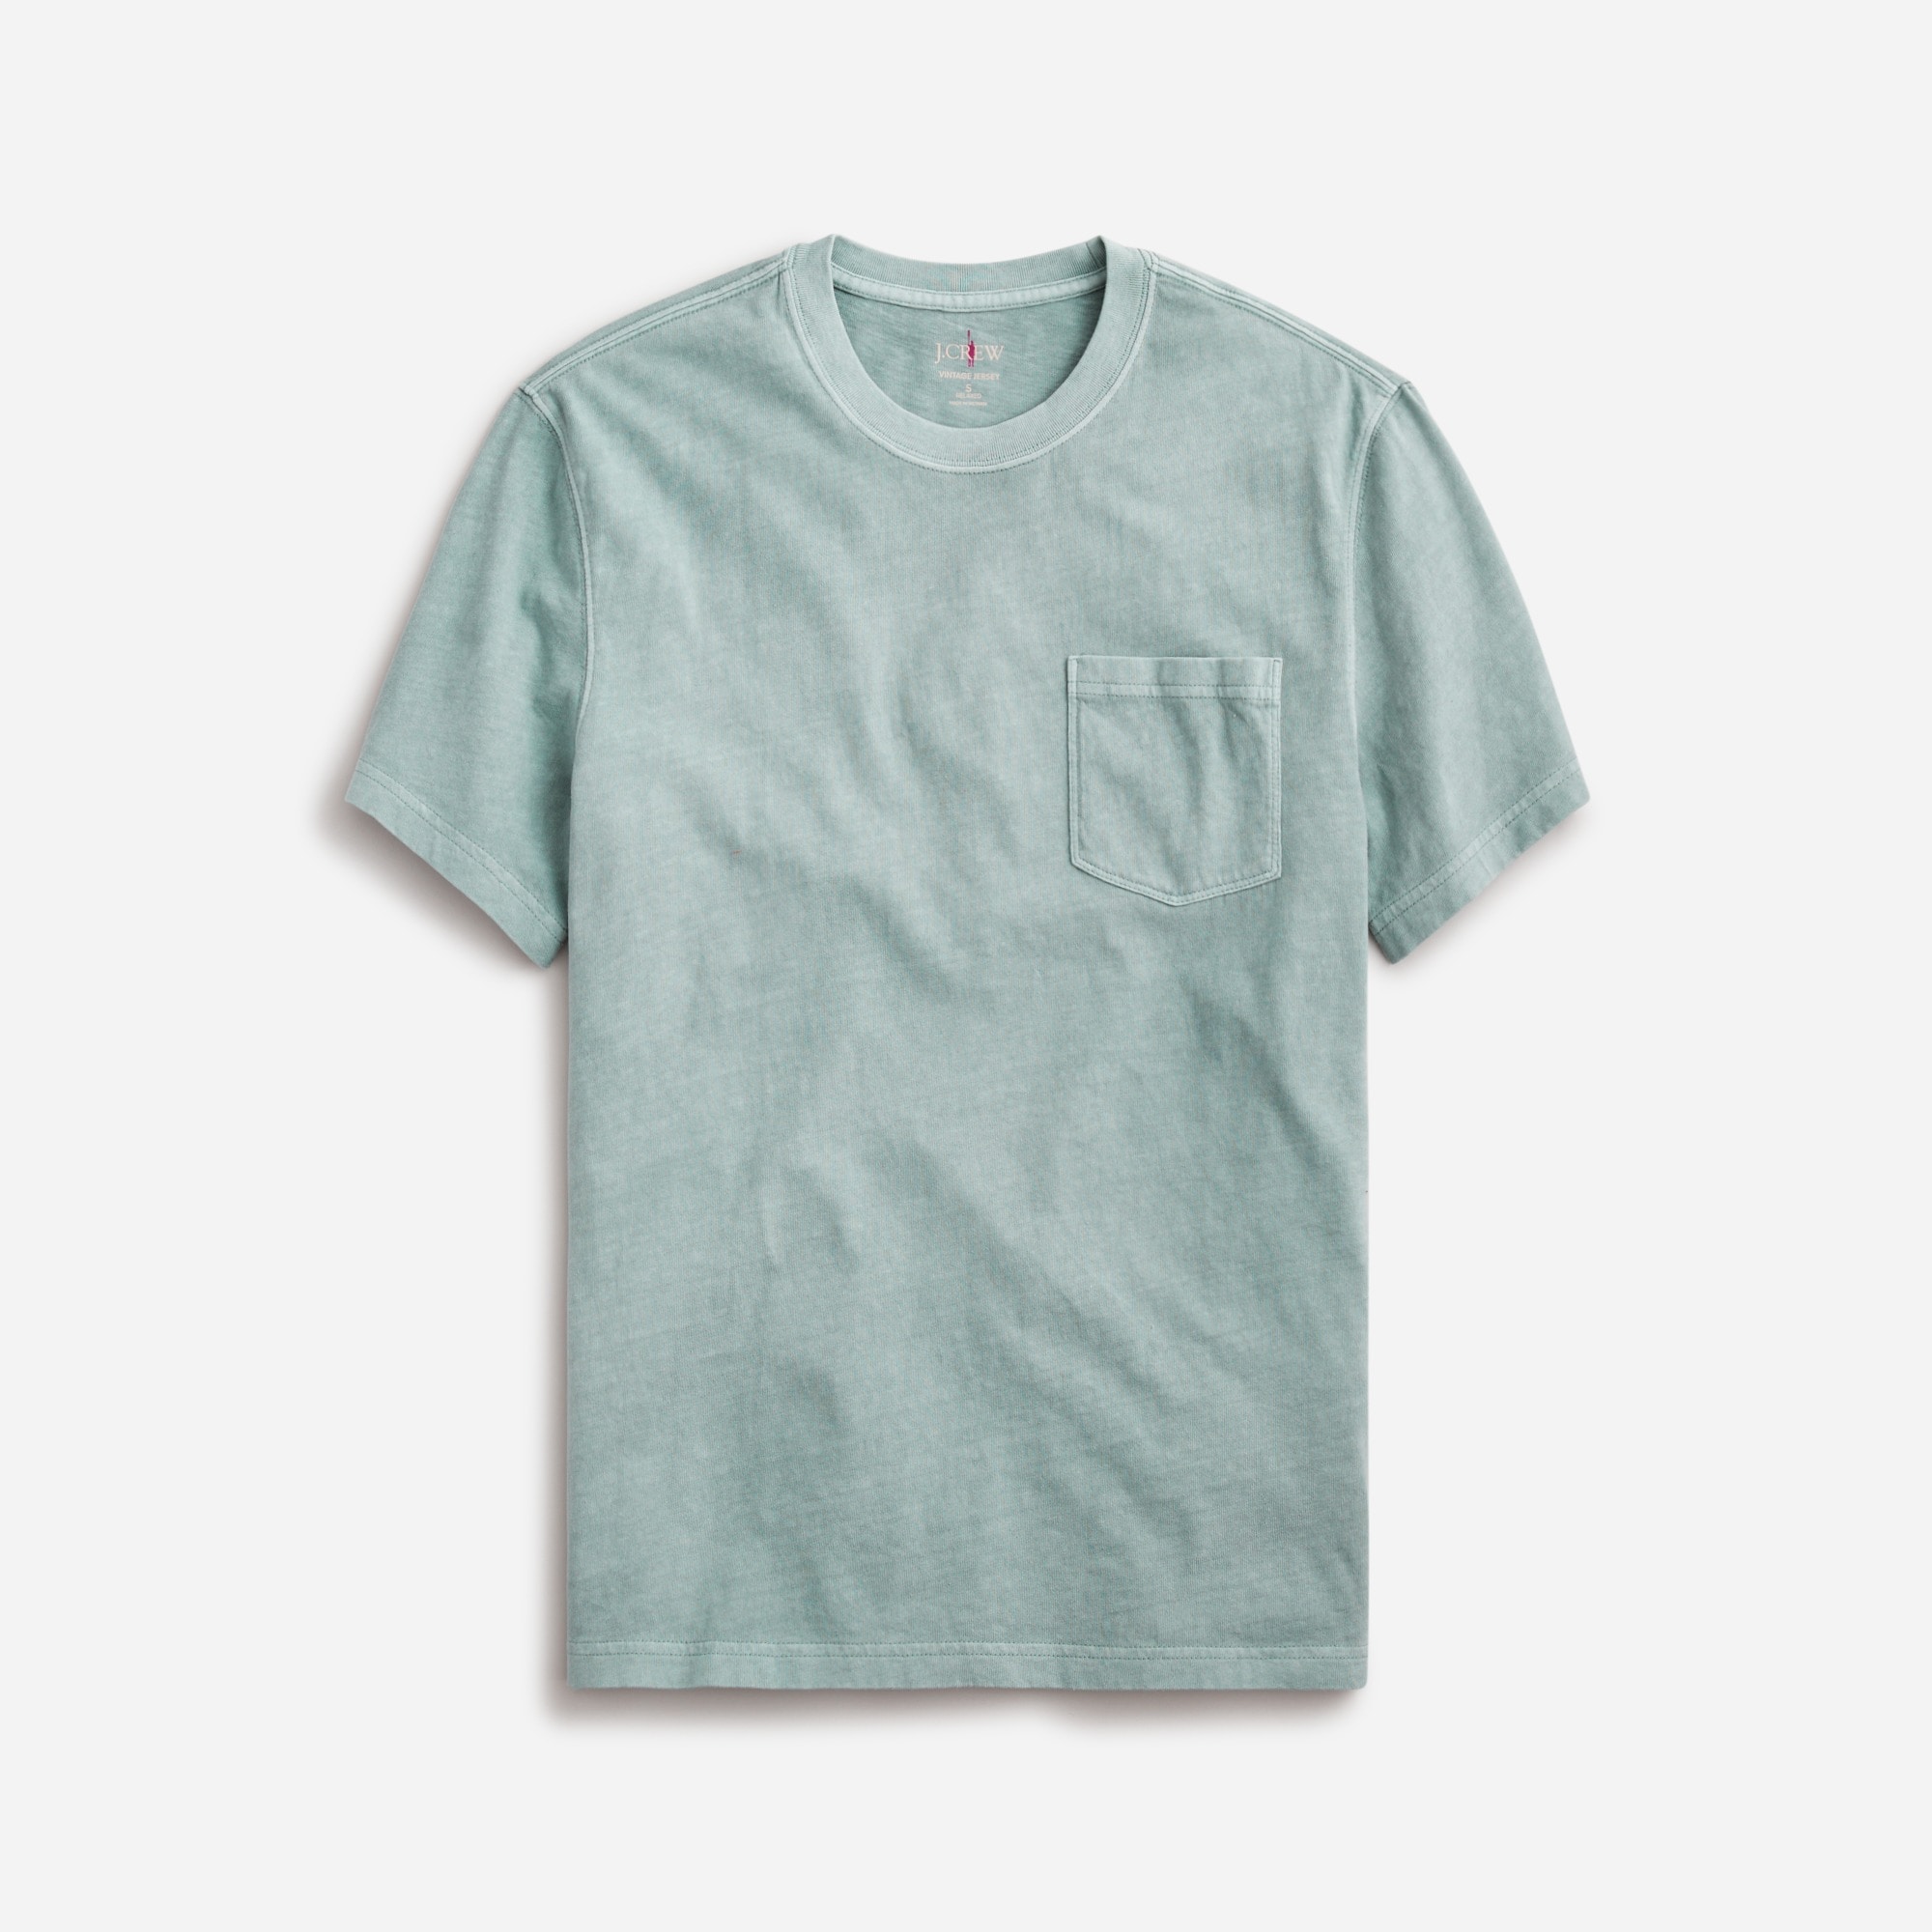  Vintage-wash cotton pocket T-shirt